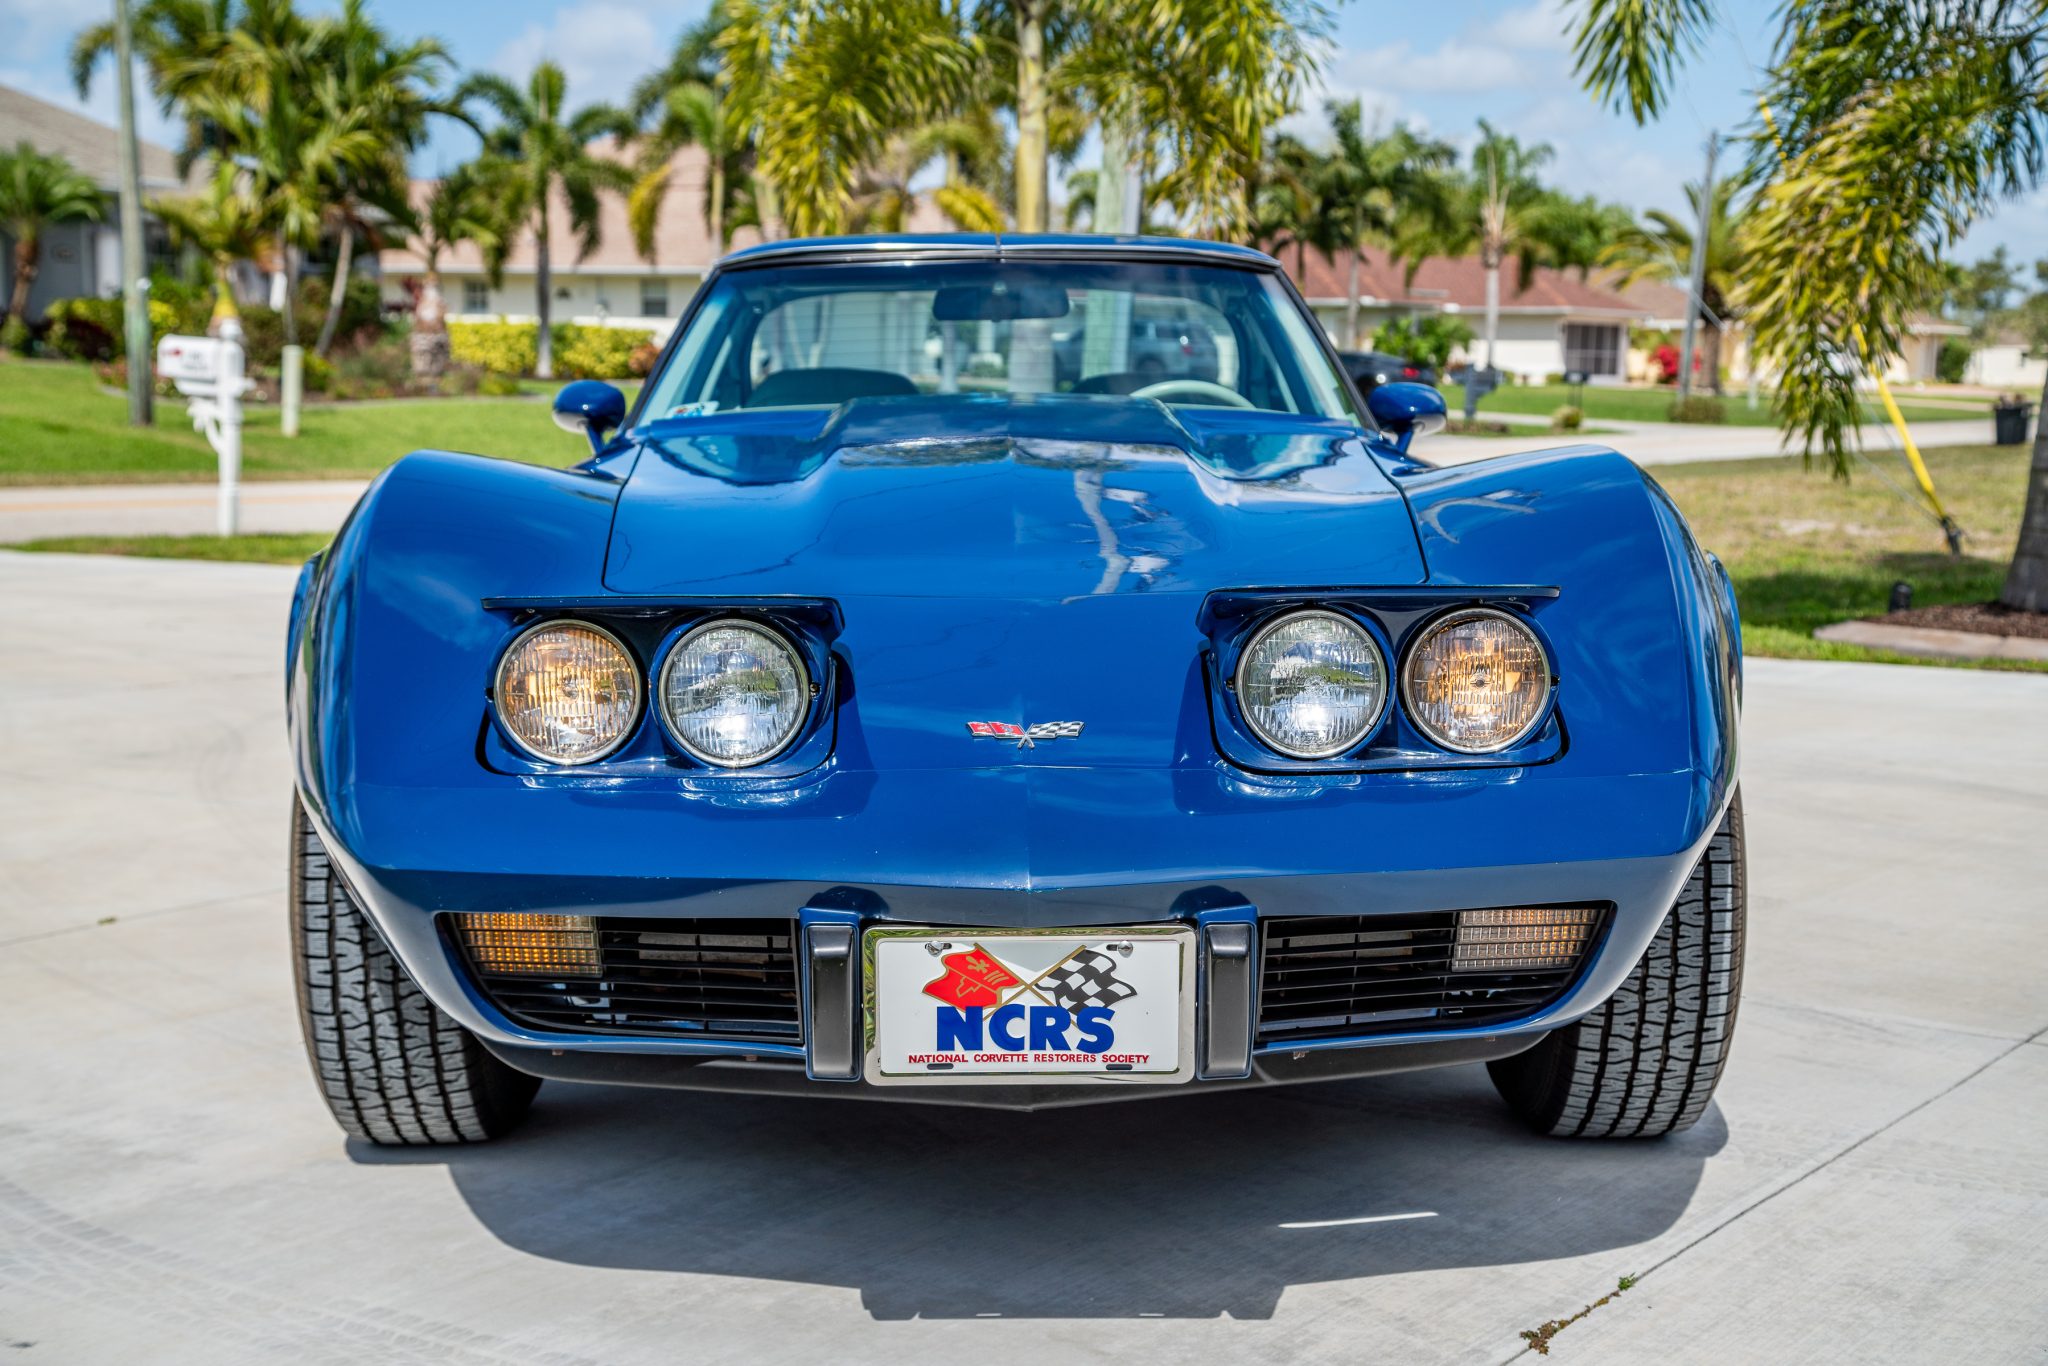 1977 Corvette in Corvette Dark Blue